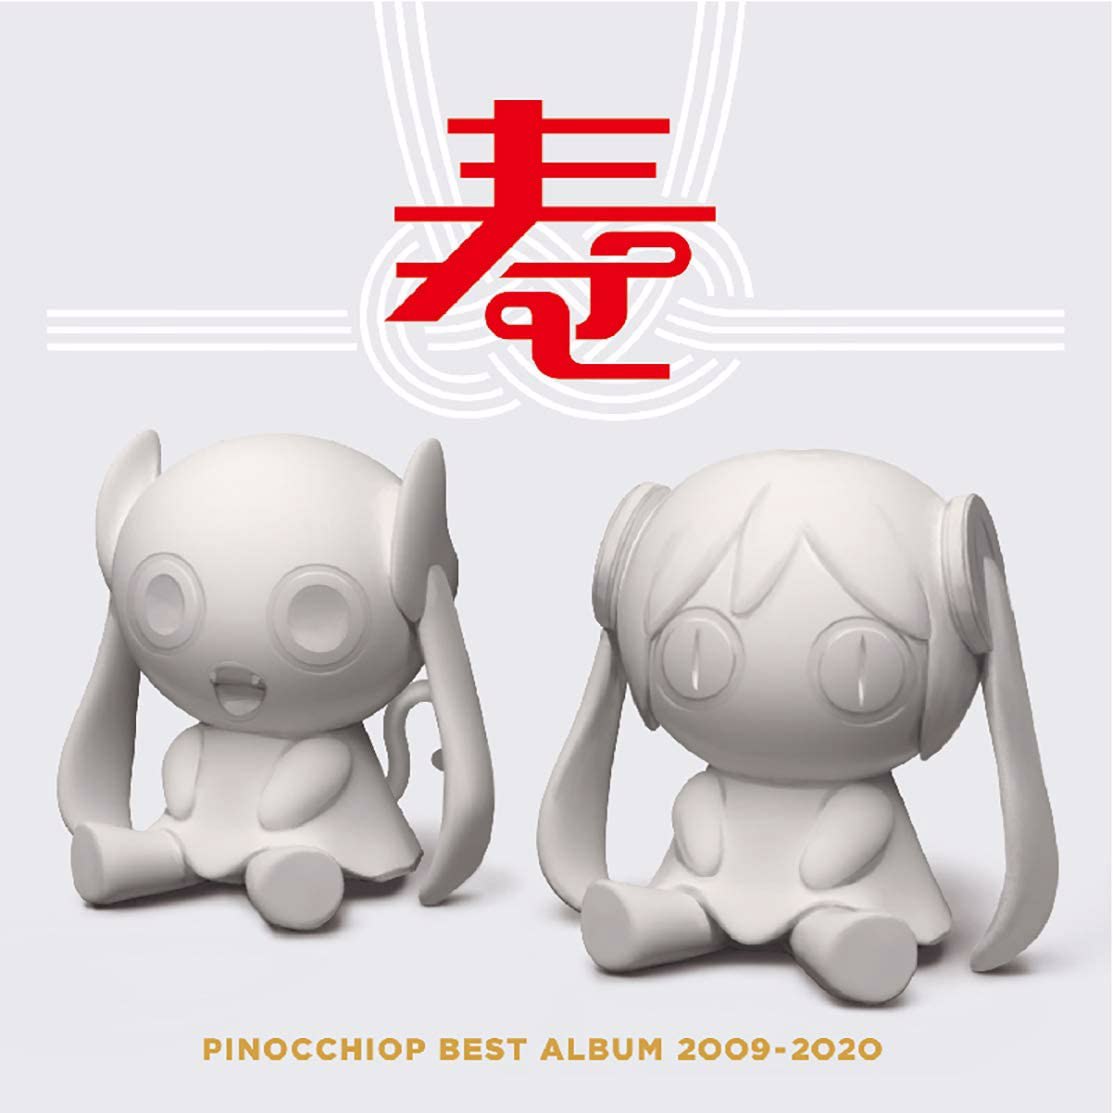 [自购自抓][210303]ピノキオピー-PINOCCHIOP BEST ALBUM 2009-2020 寿(虎穴特典付)(flac+wav+cue+log)[2.61G]